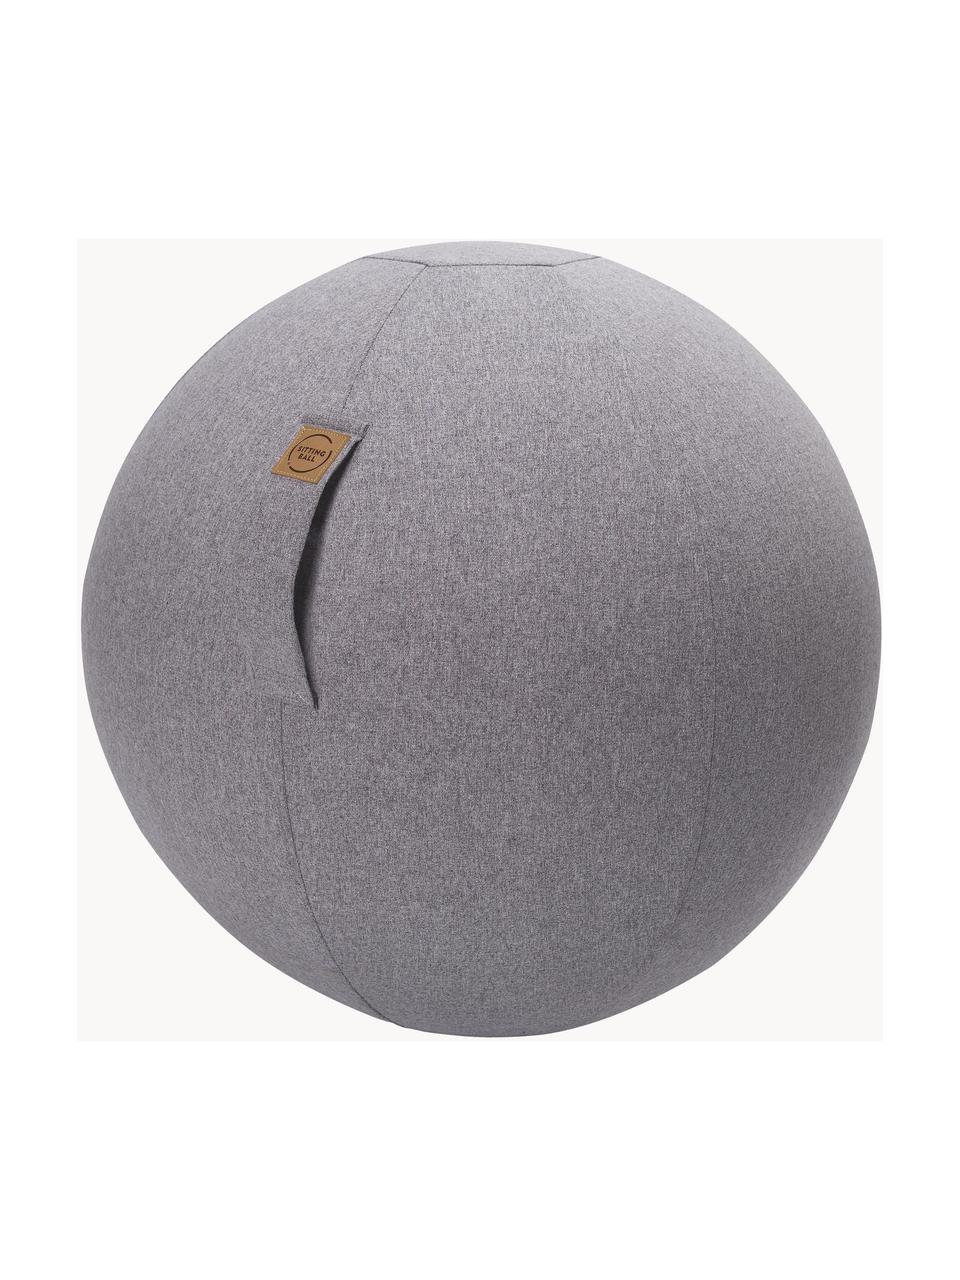 Gym ball textile Felt, Tissu gris clair, Ø 65 cm